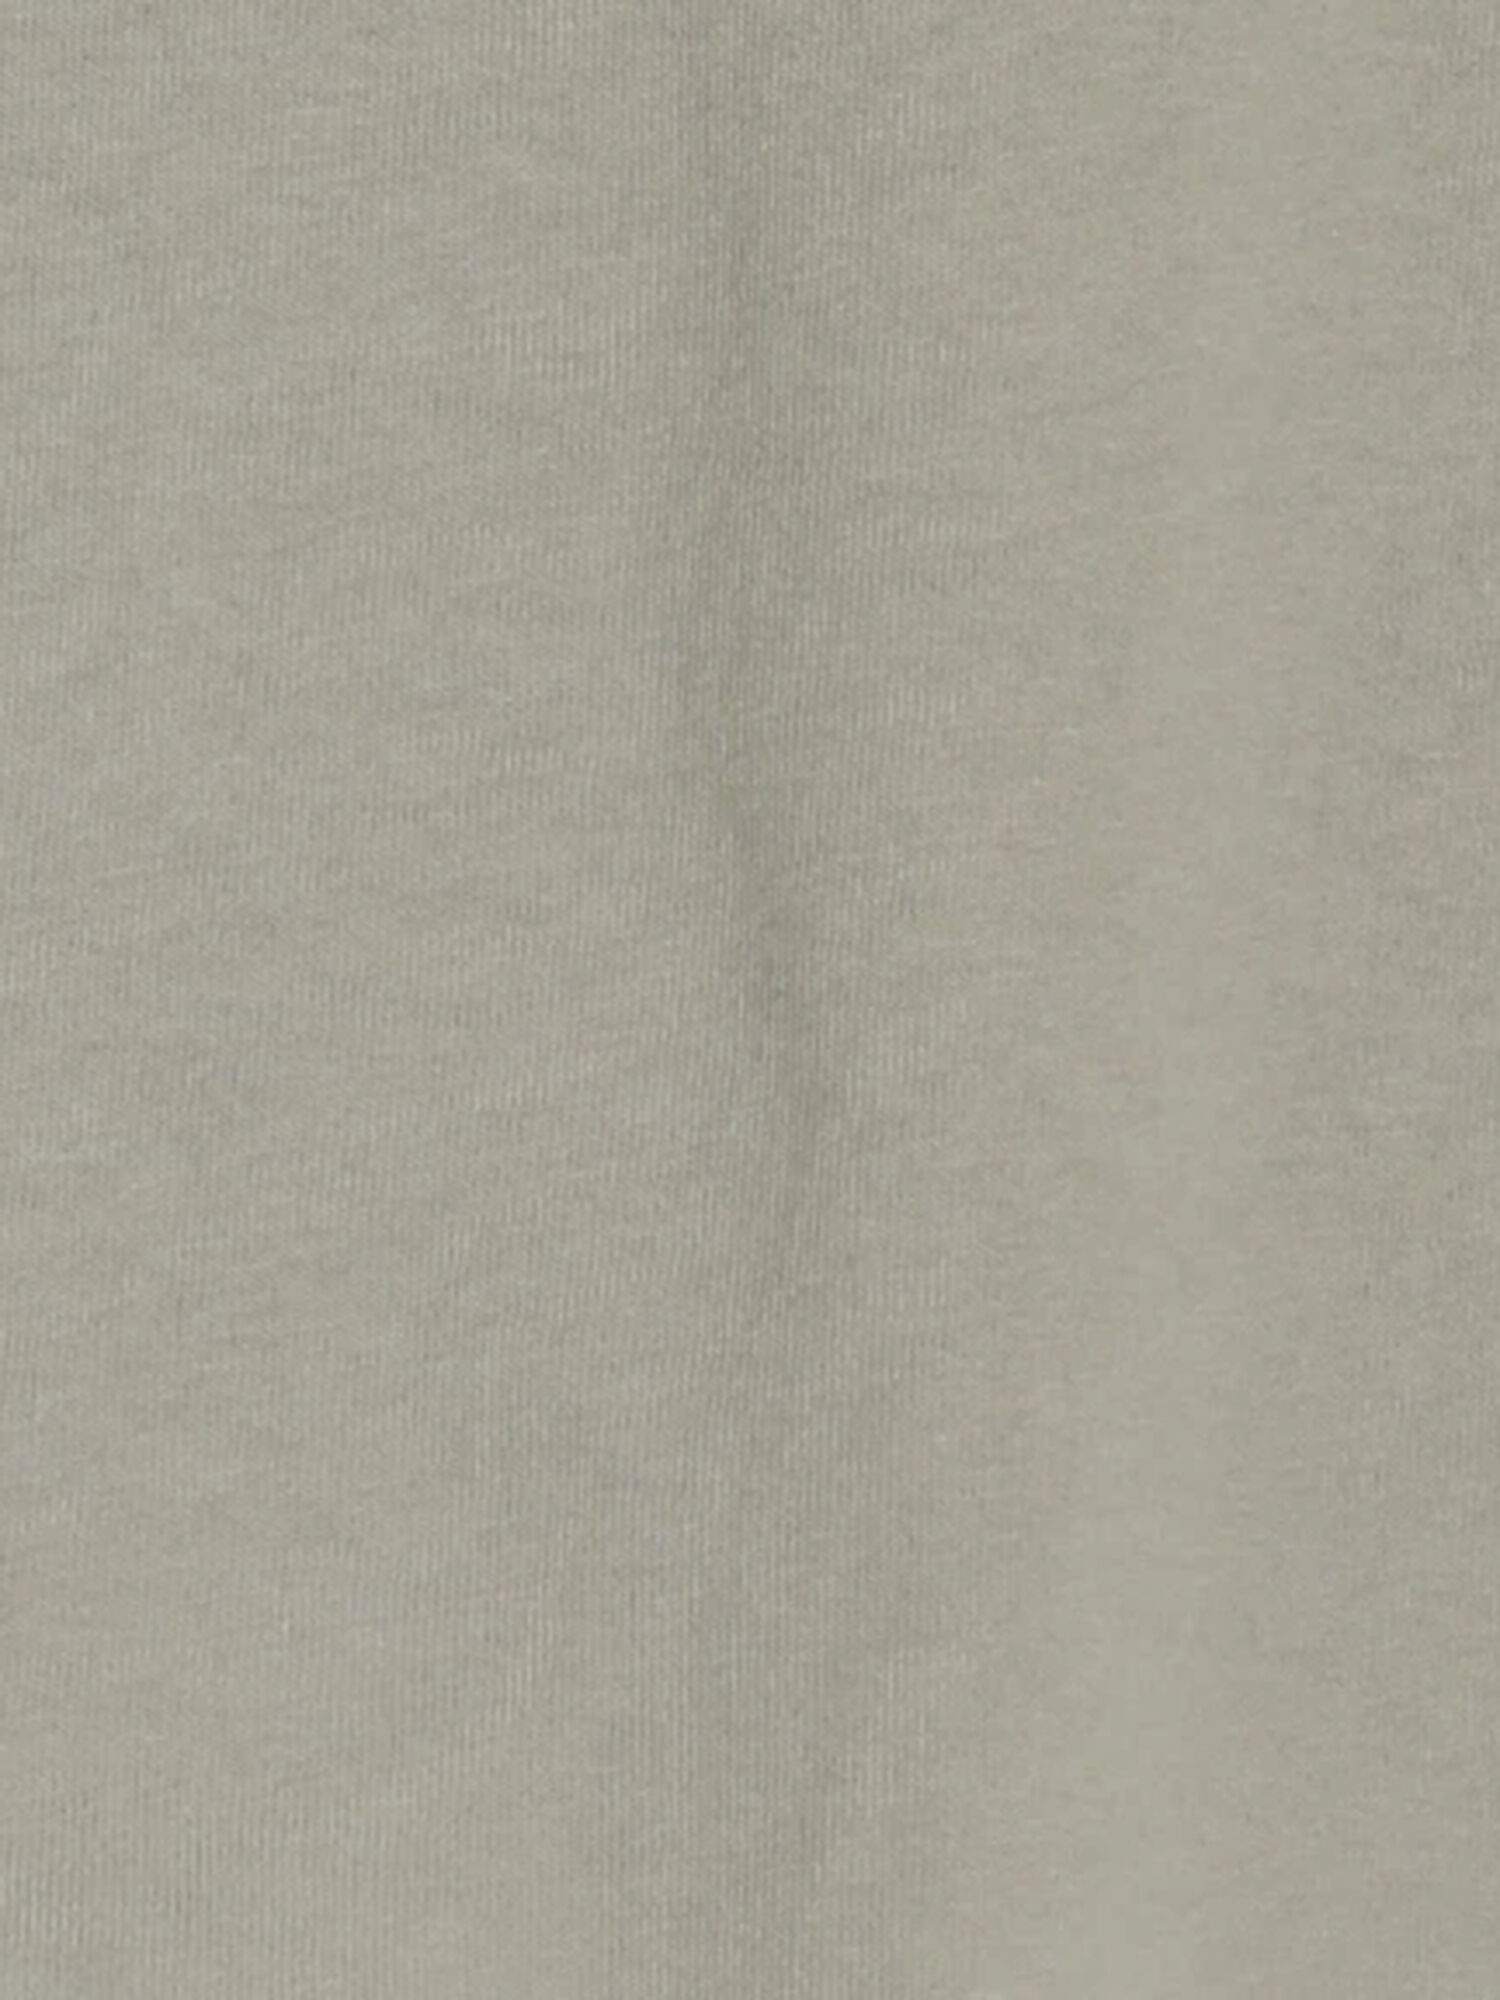 Disney 101匹わんちゃん バックプリントtシャツ ミント パープル トップス Samansa Mos2 Lagom サマンサモスモス ラーゴム 公式通販